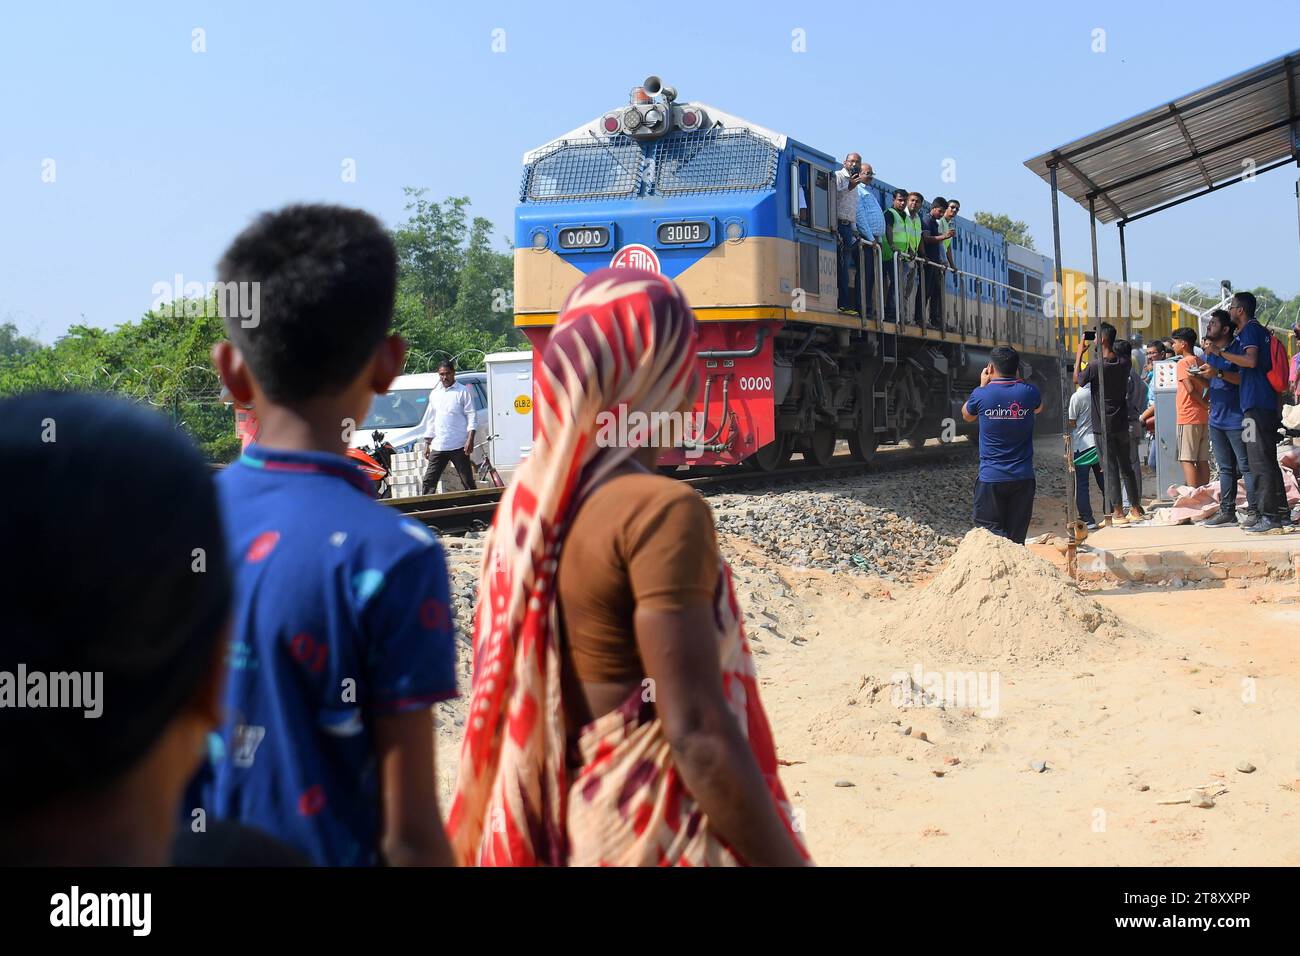 Gli indiani guardano un treno di prova e scattano fotografie, che sta attraversando il confine Indo-Bangladesh. Il treno partì dalla stazione di Gangasagar in Bangladesh e raggiunse la stazione di Nischintapur per la prima volta alla periferia di Agartala. Tripura, India. Foto Stock